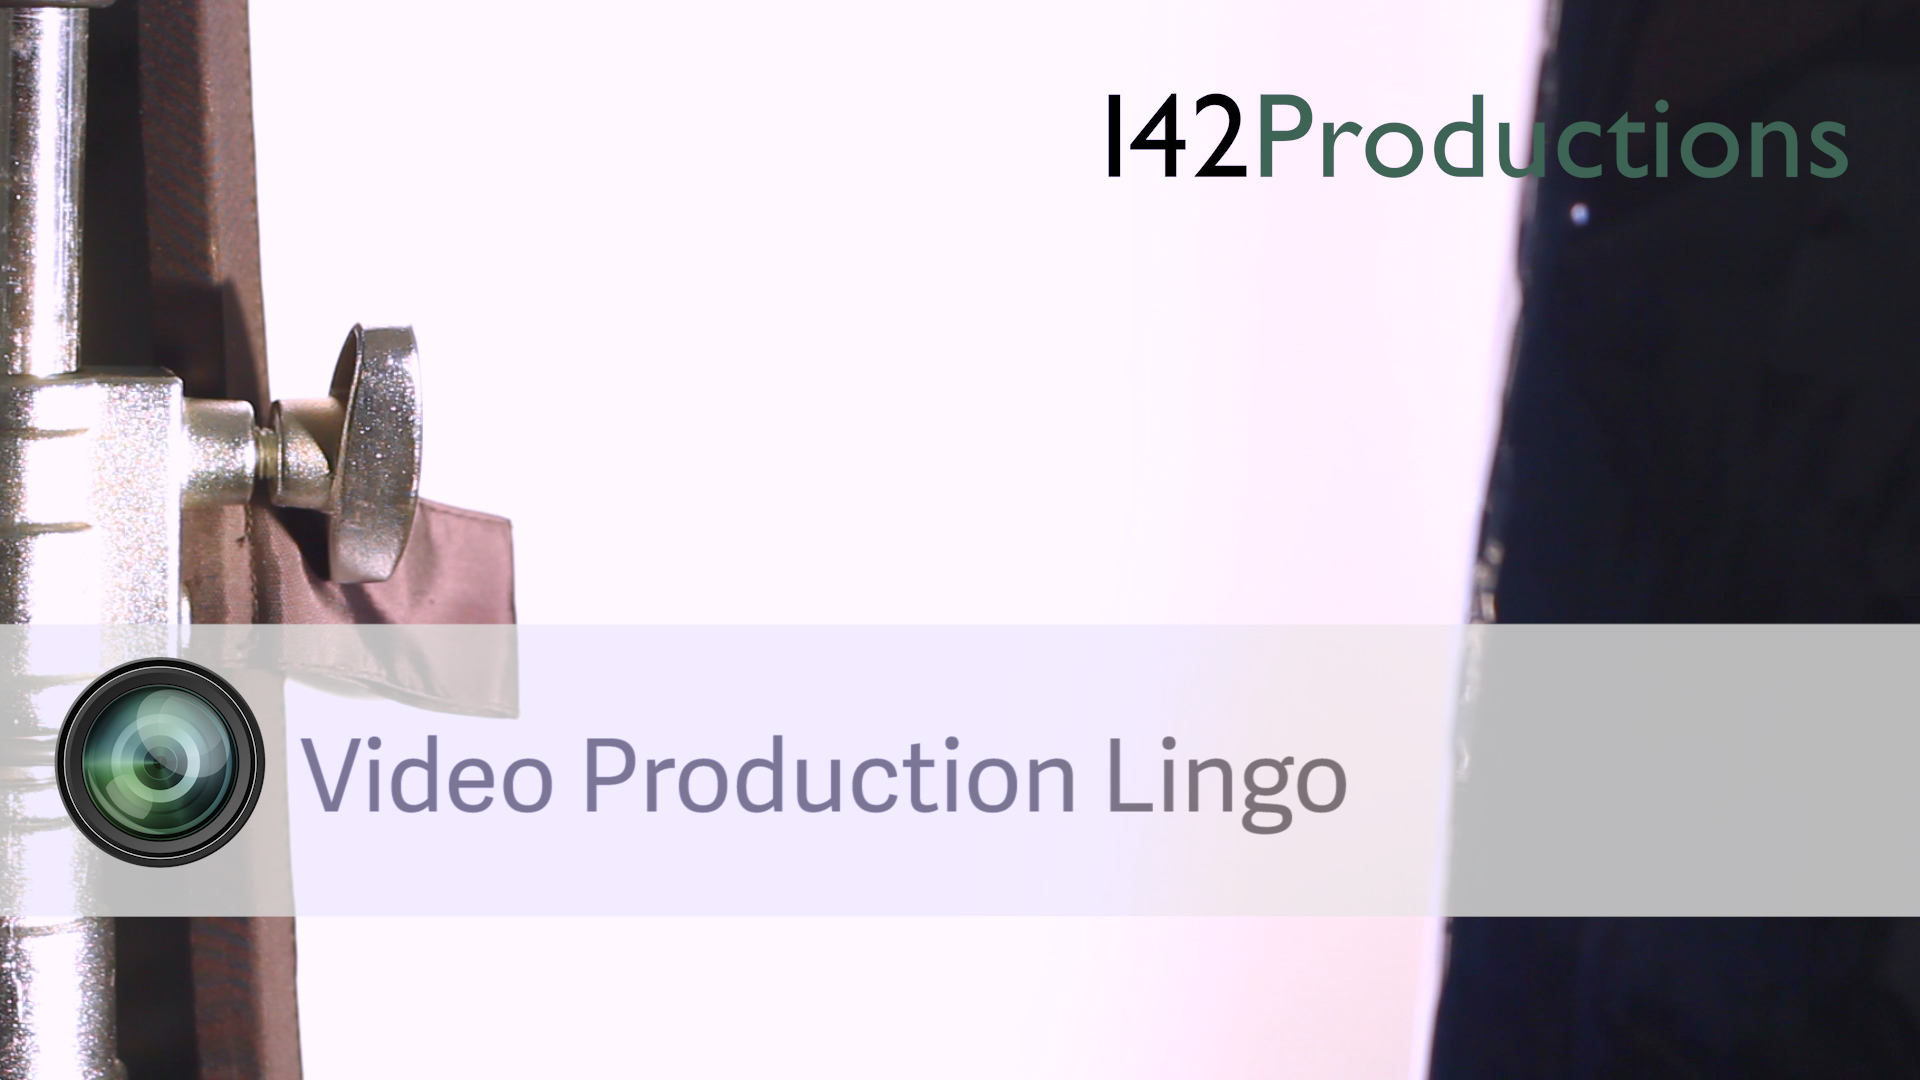 Video Production Lingo